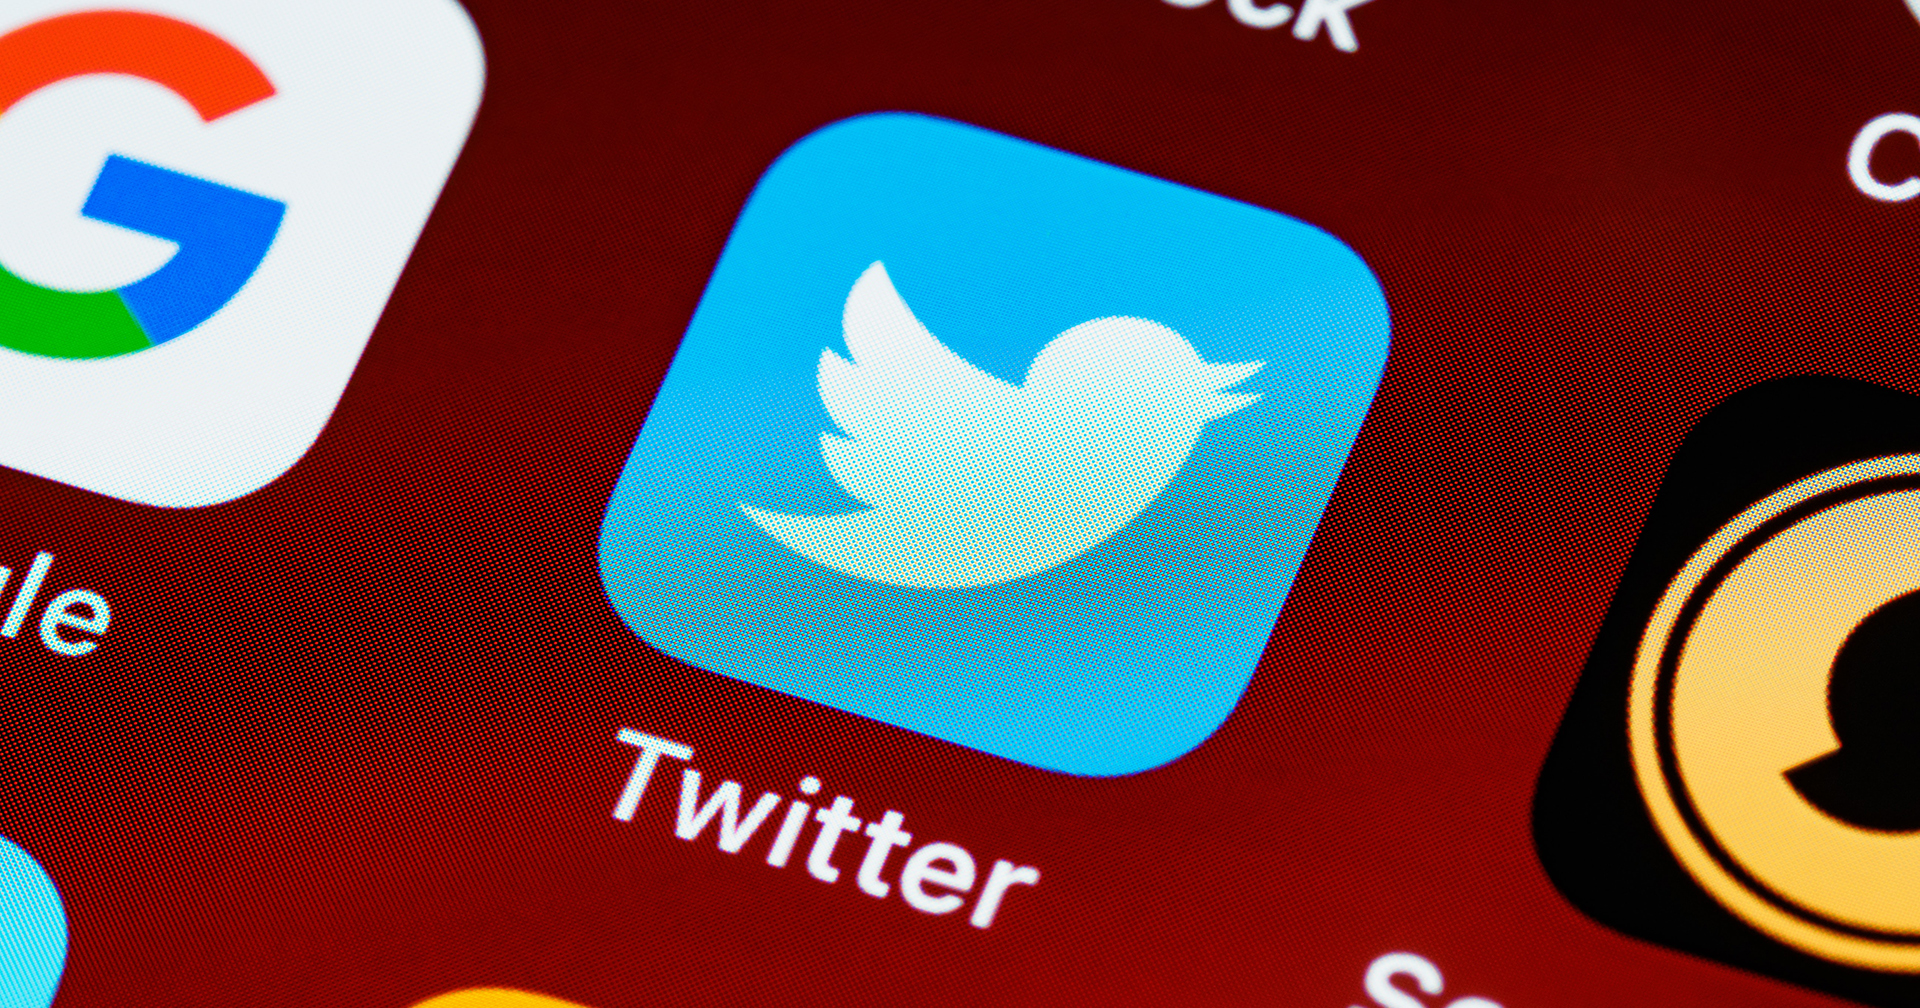 รายงาน : Twitter ปลดพนักงานอย่างน้อย 50 คน เพื่อลดค่าใช้จ่าย